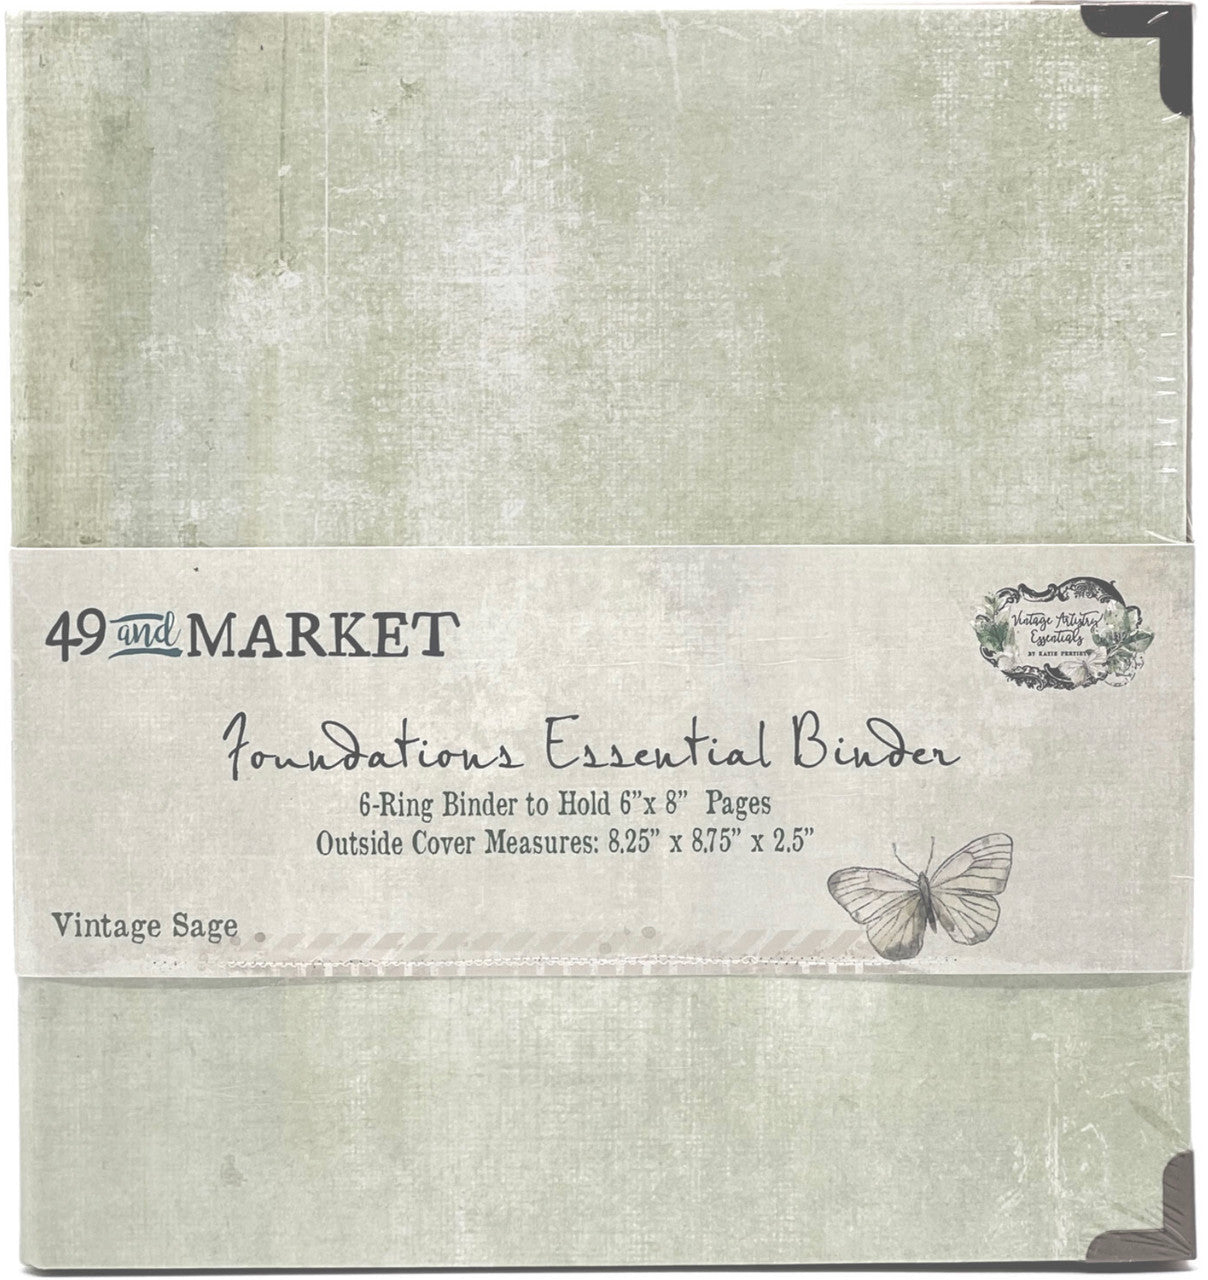 49 & Market Foundations Essential Binder - Vintage Sage – Kreative